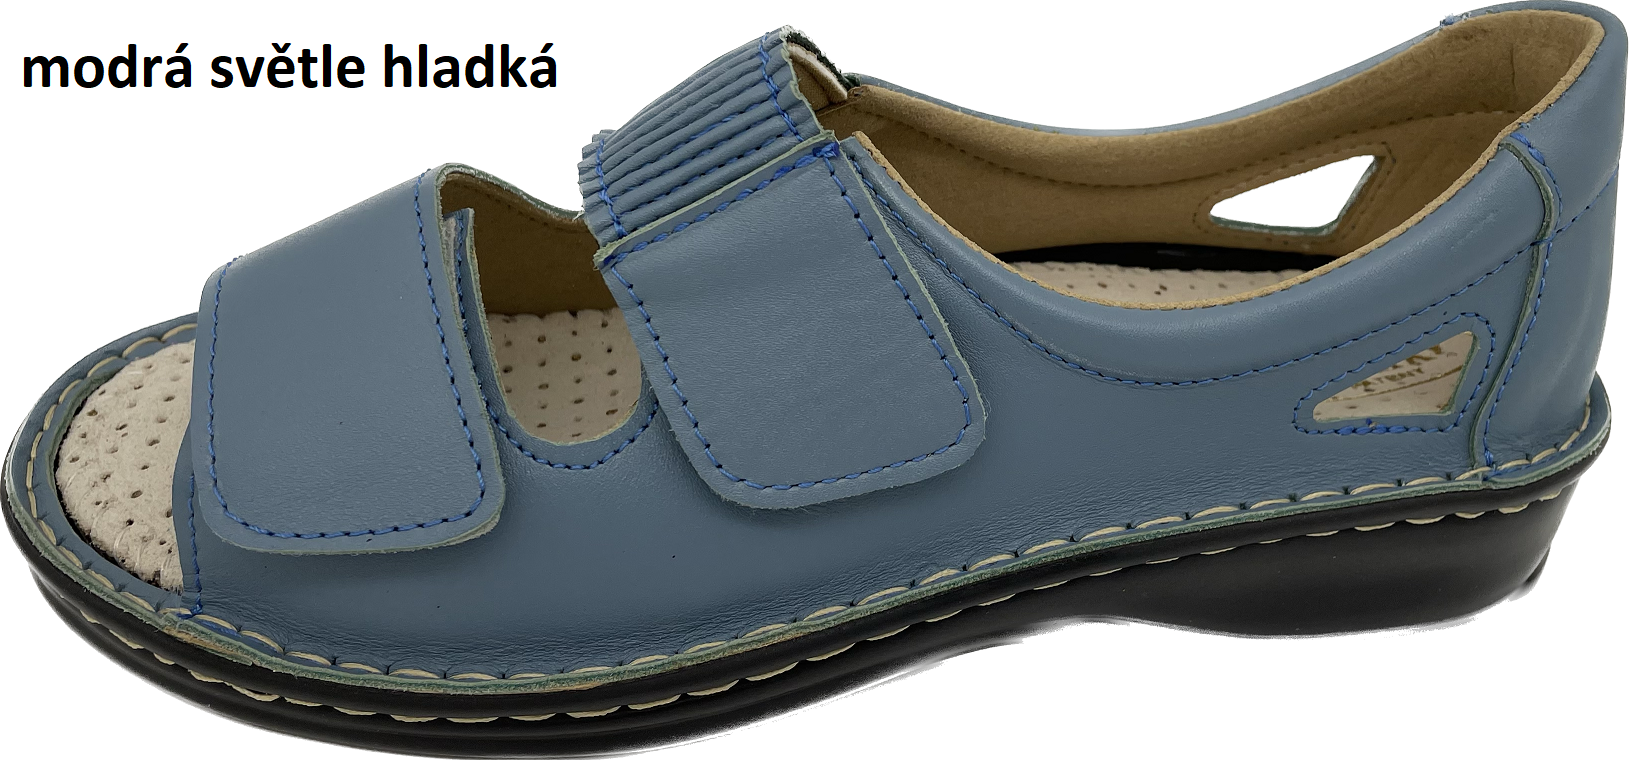 Boty Hanák vzor 306 - černá podešev Barva usně: modrá světle hladká, Velikosti obuvi: 42